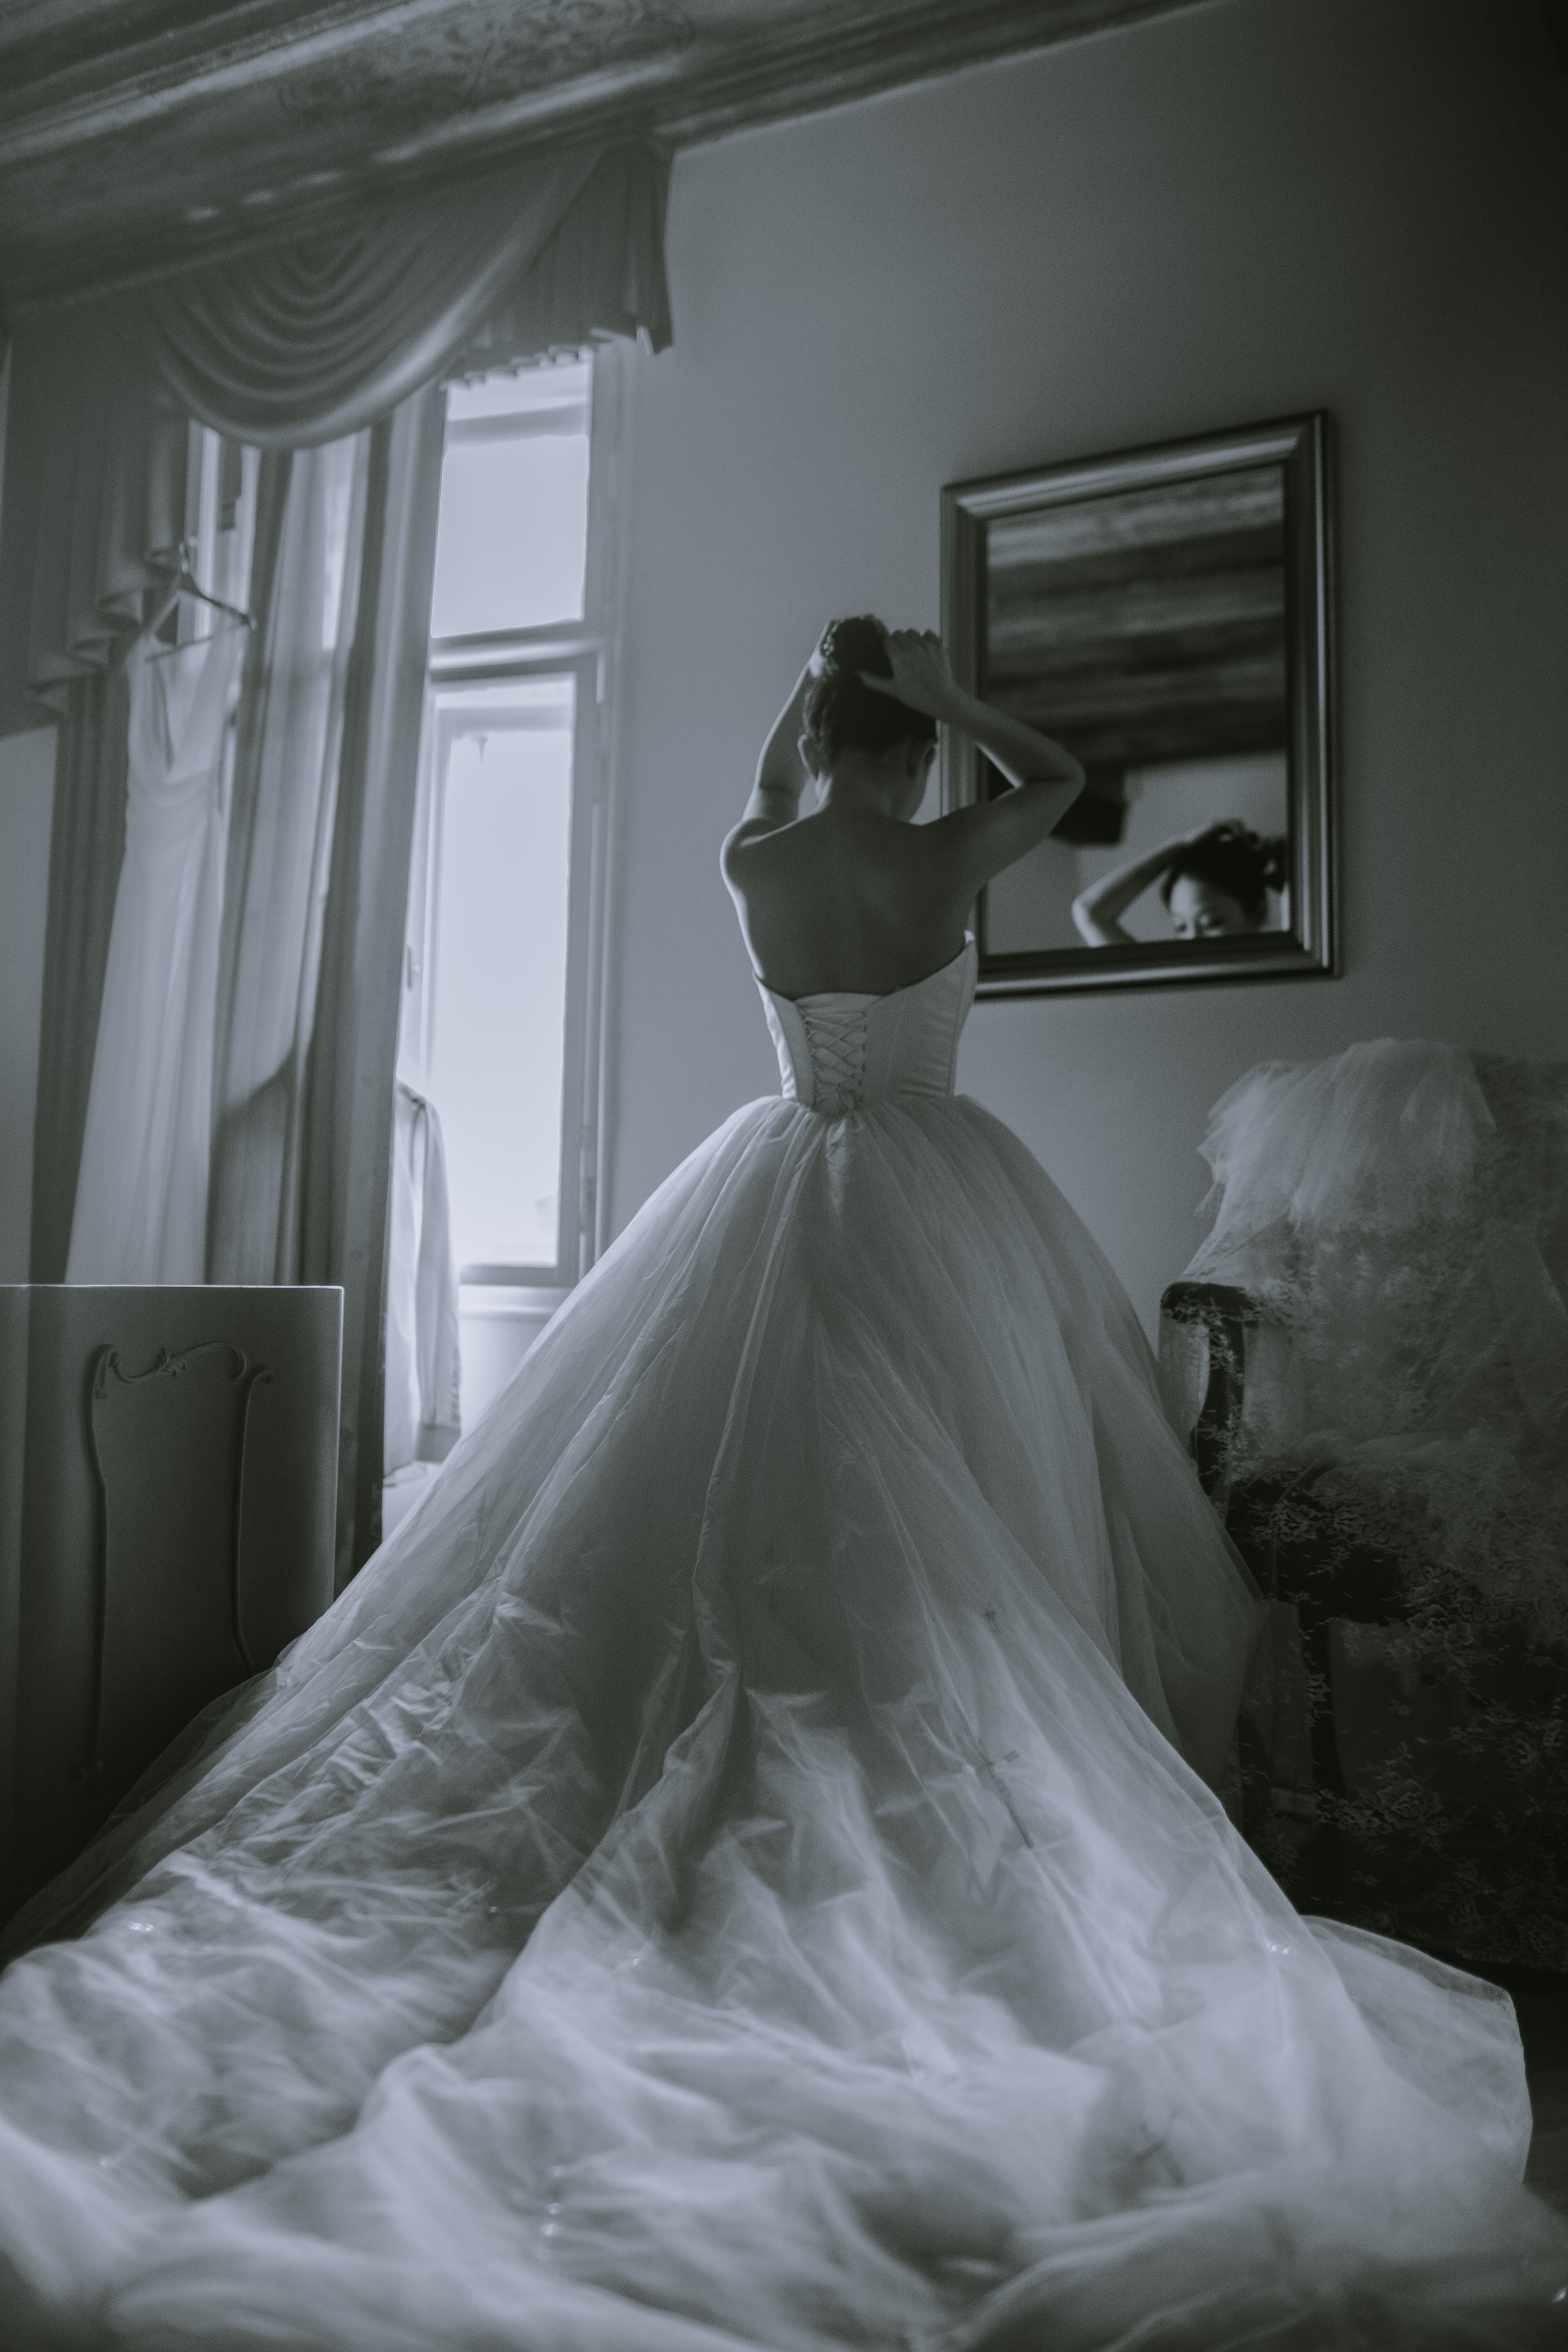 Bride | Source: Unsplash